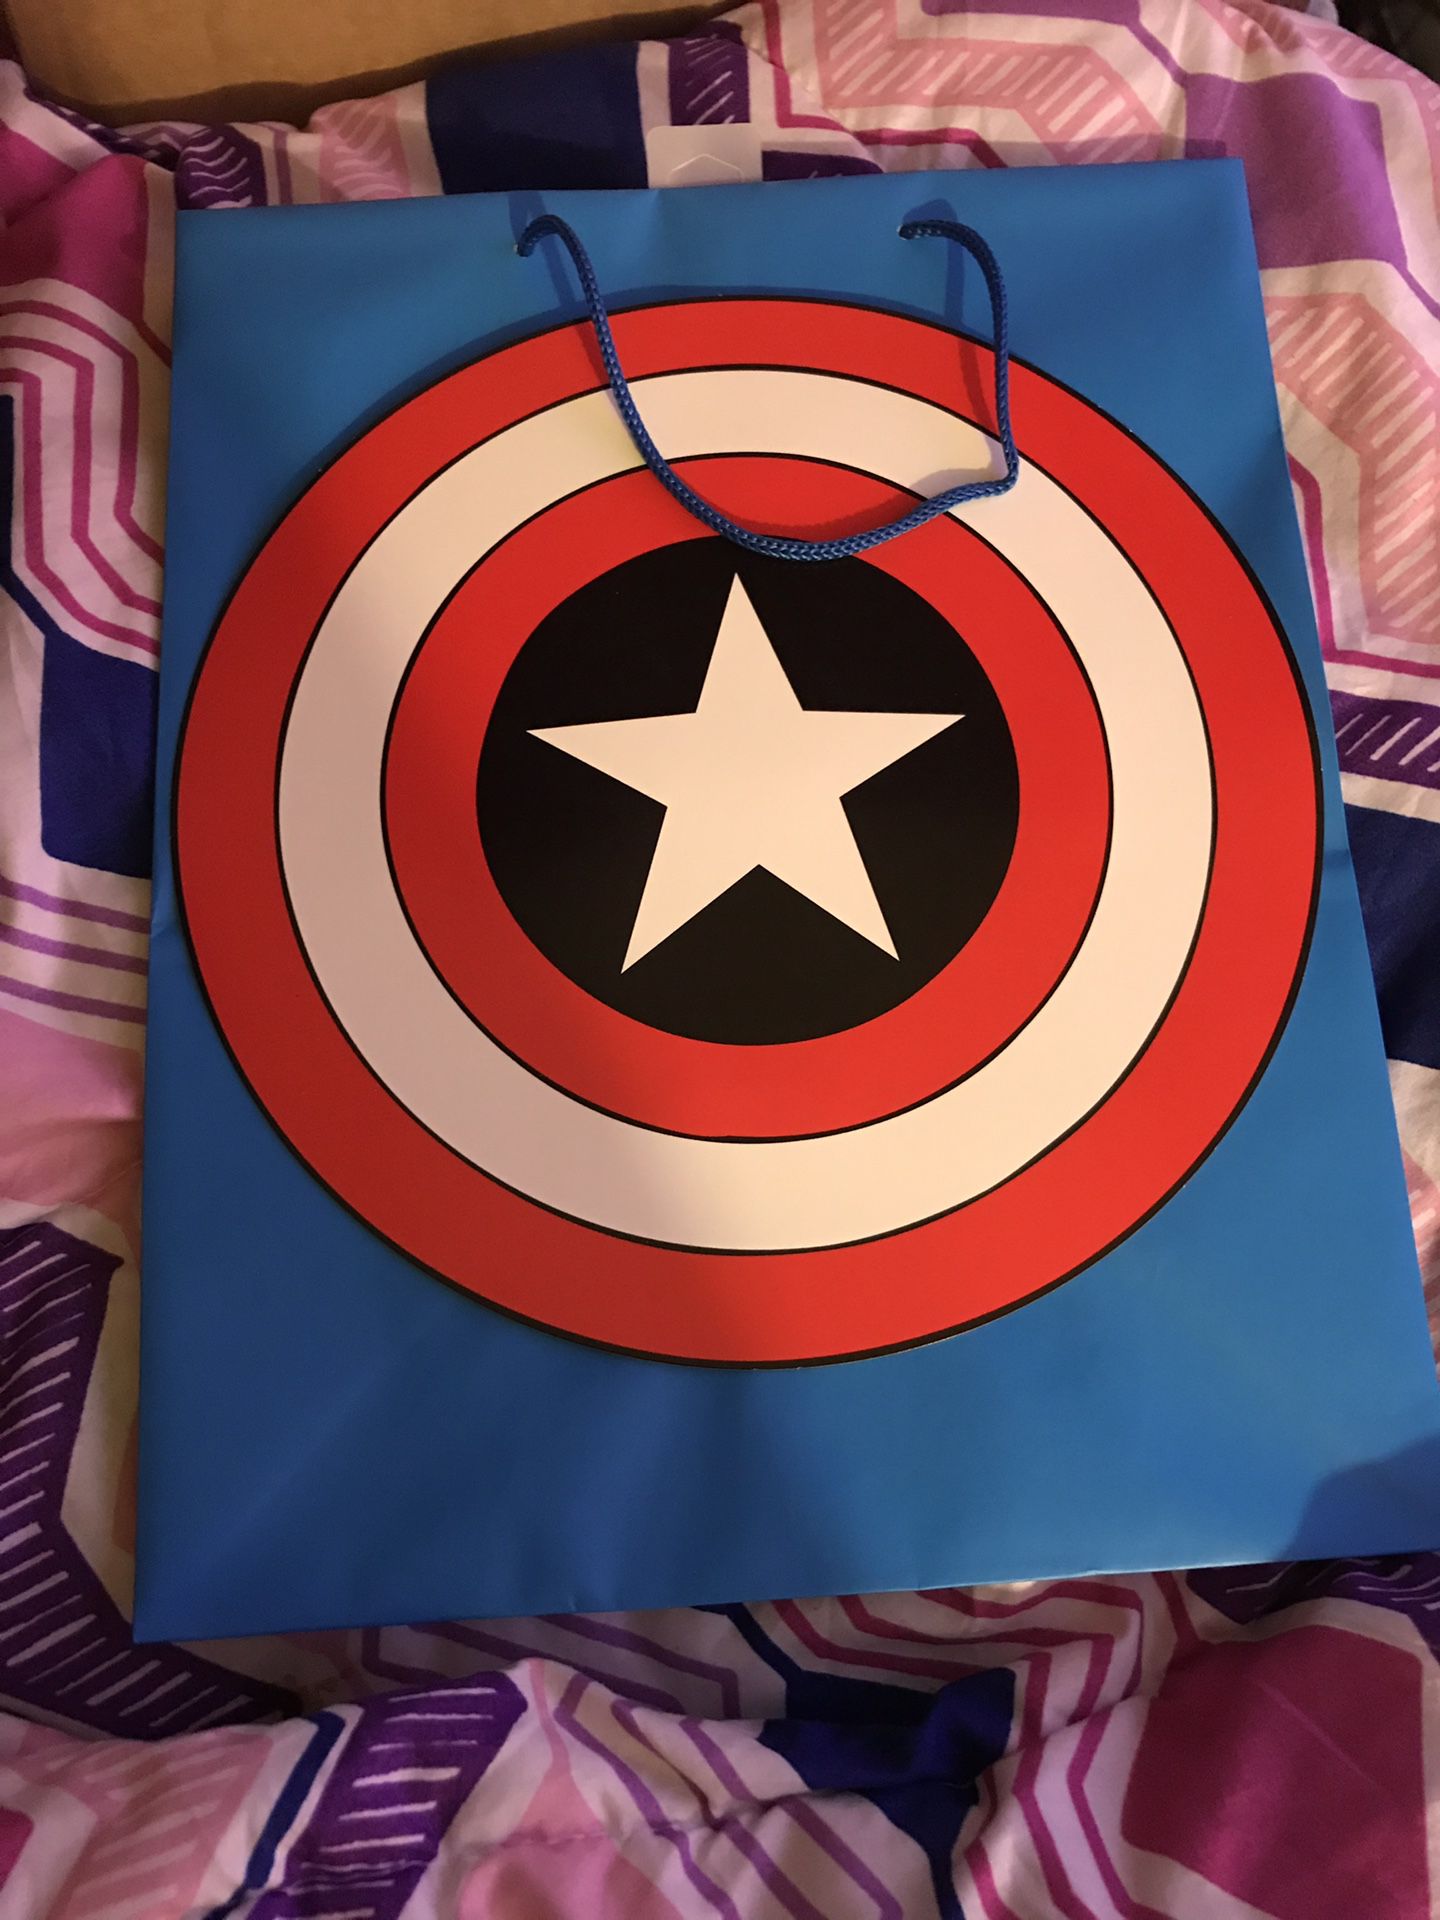 Brand new large captain America gift bag